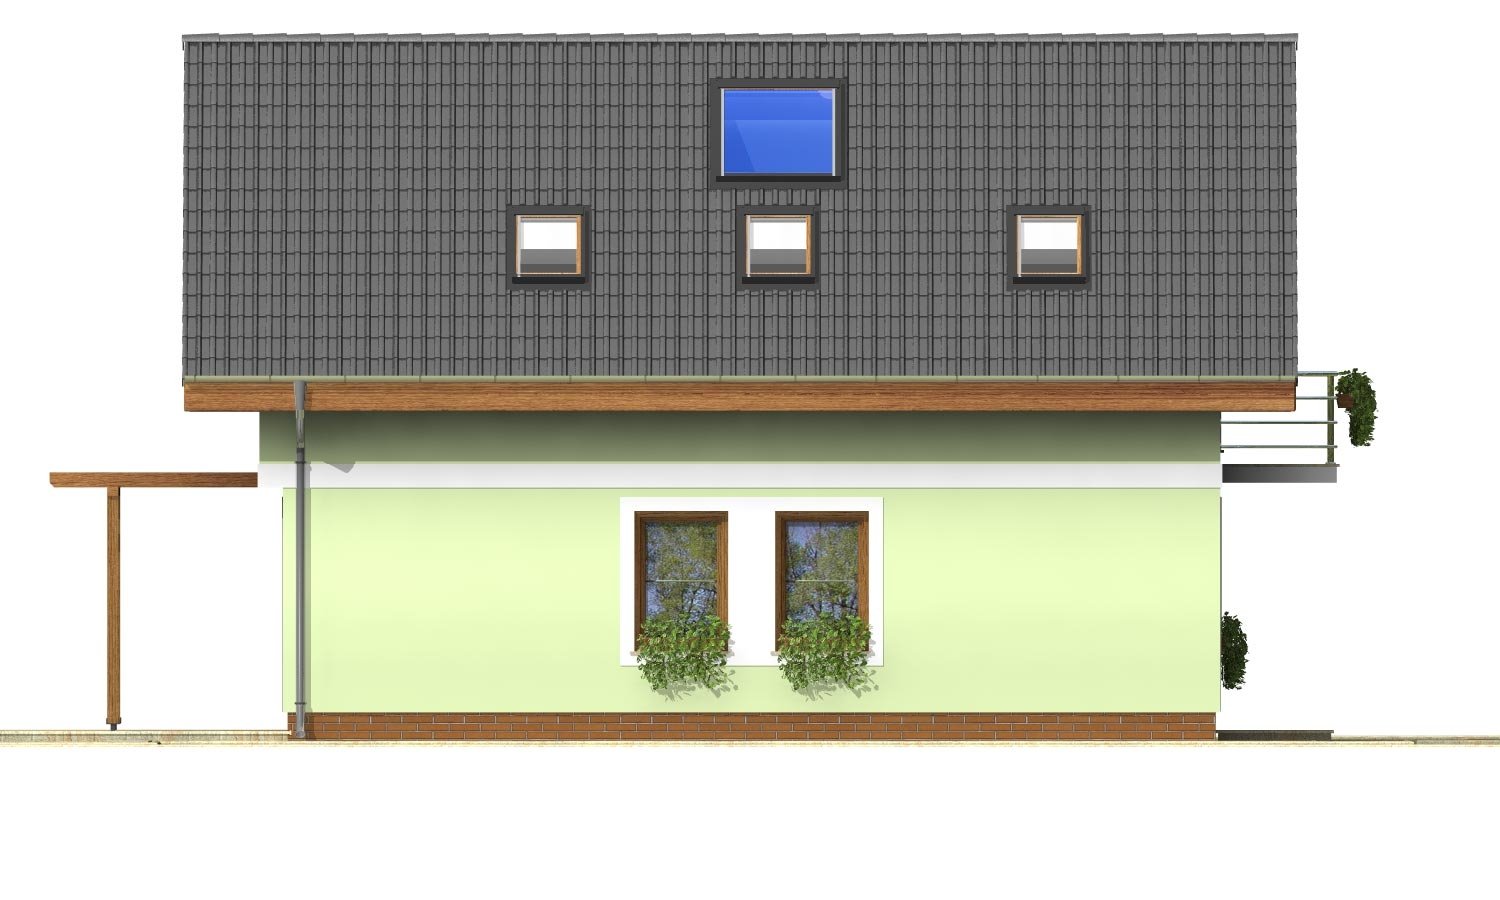 Zrkadlový pohľad 2. - Projekt jednoduchého domu na úzký pozemek s čelním vstupem.